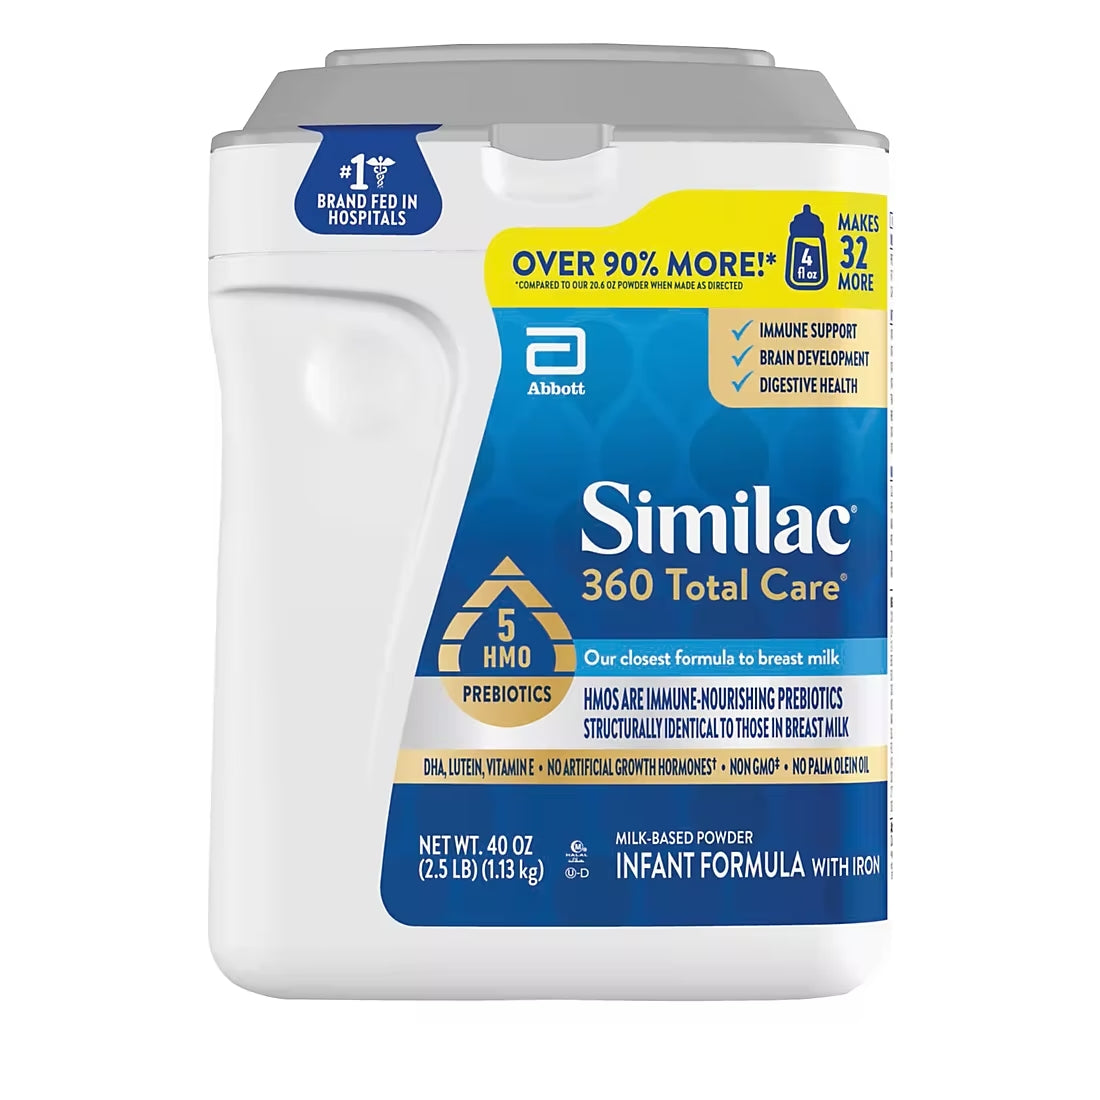 Similac 360 Total Care Milk Based Powder Infant Formula - 1.13kg (40oz)